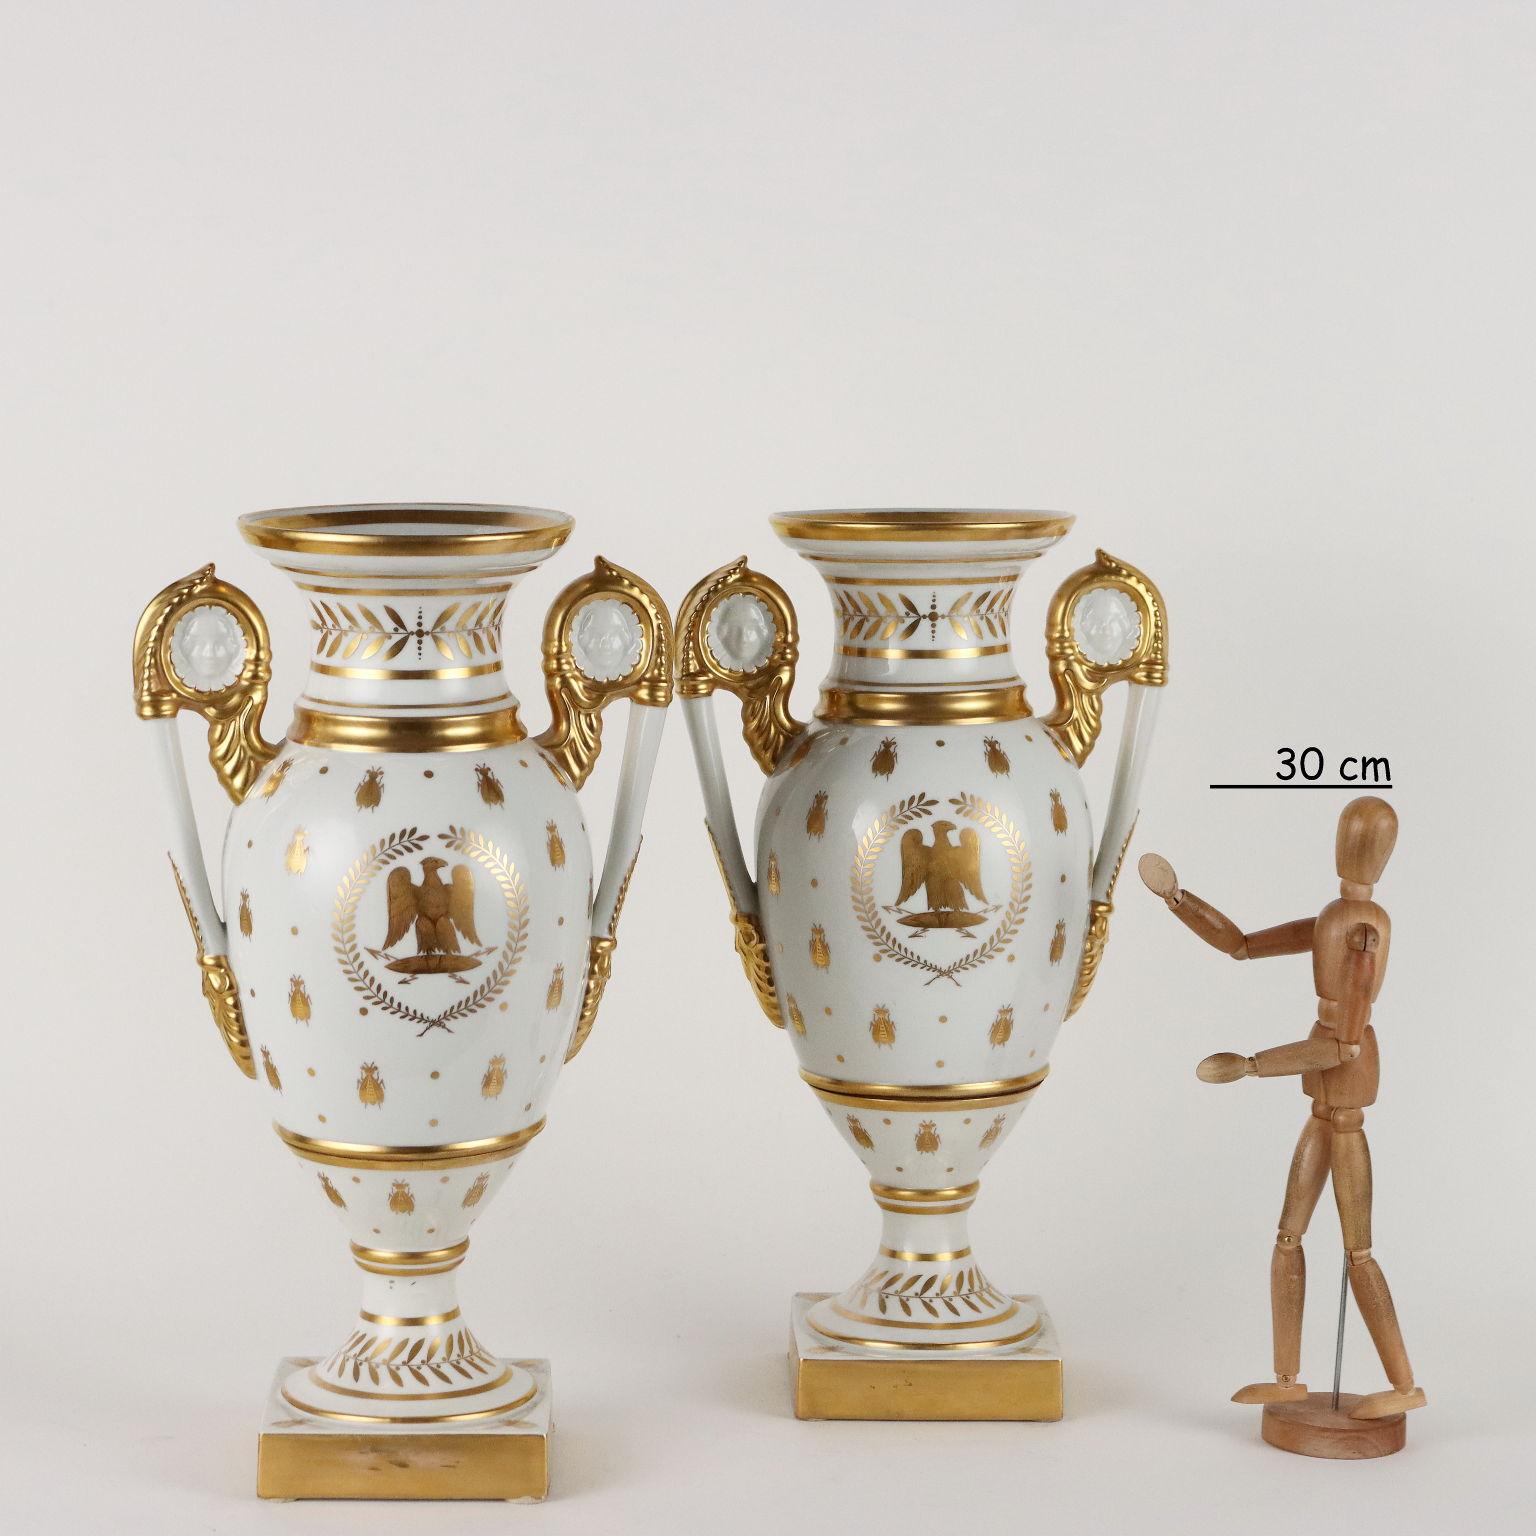 Coppia di vasi in porcellana con decori in oro in stile impero, con le mosche, con l'aquila imperiale sul lato e la 